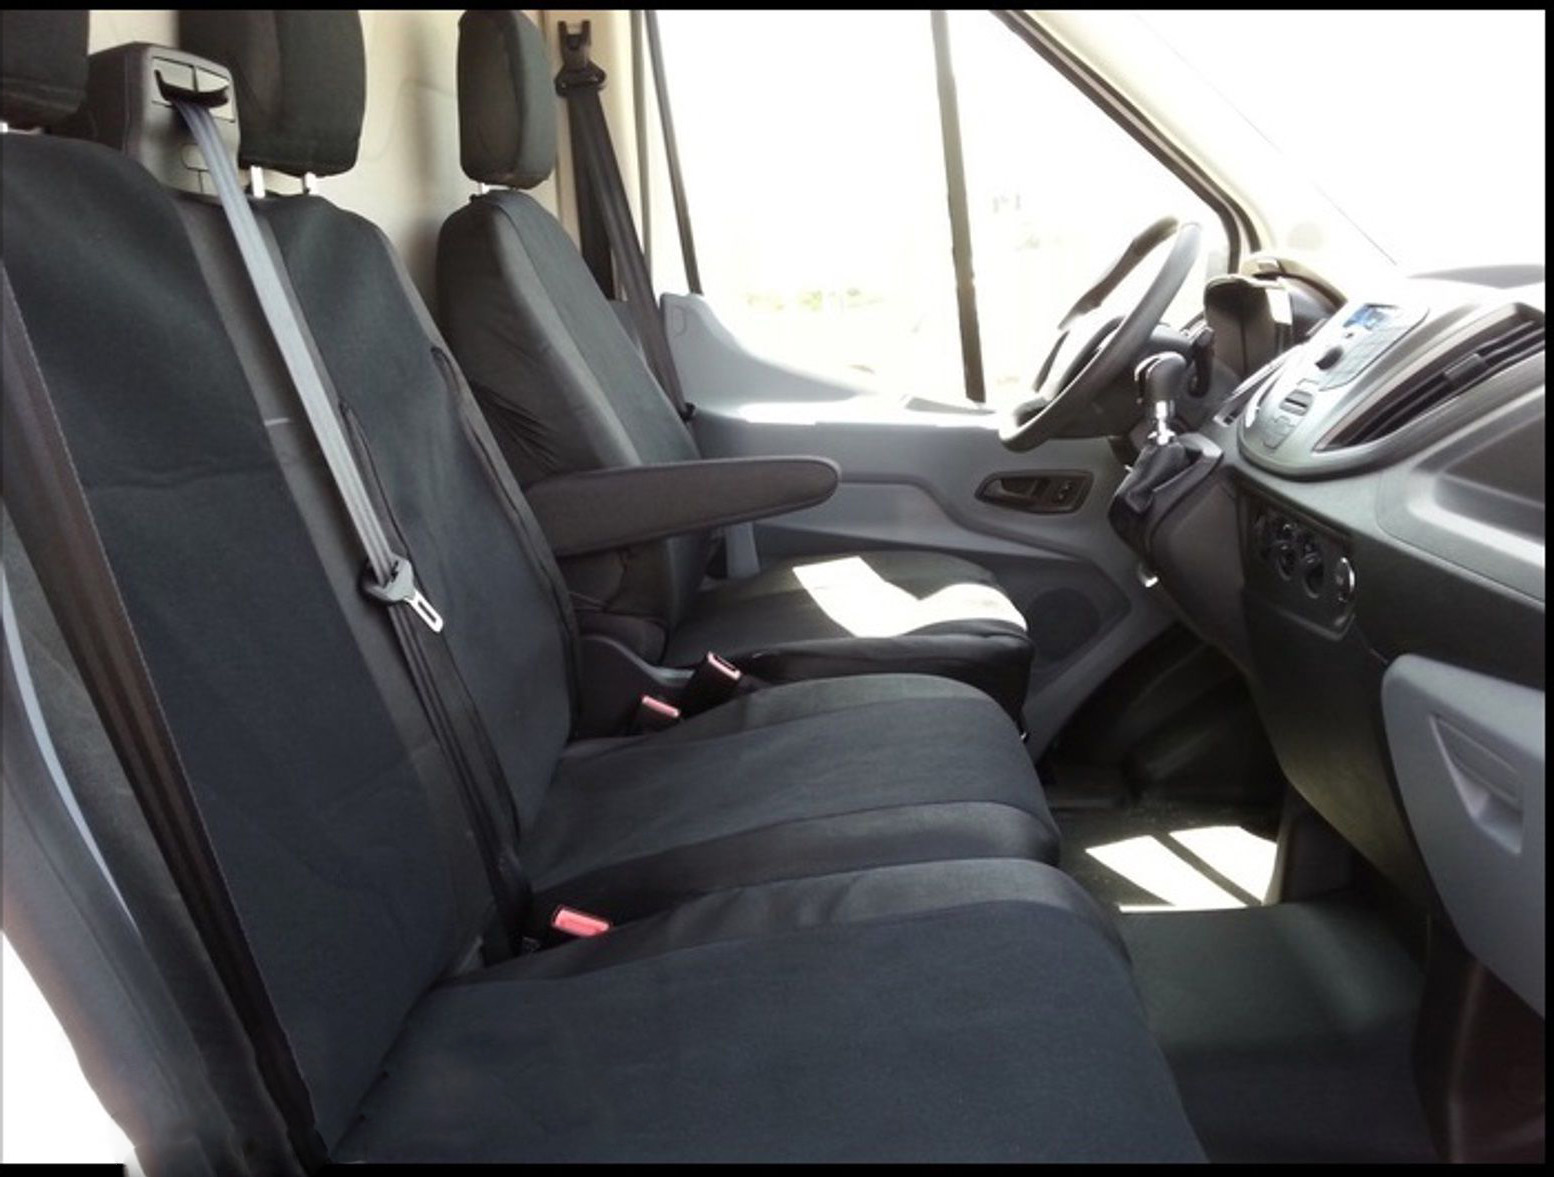 2+1 комплект калъфи / тапицерия - специално ушити за Ford Transit 2013+ - пасват перфектно - с отвор за барчето на двойната седалка - черно